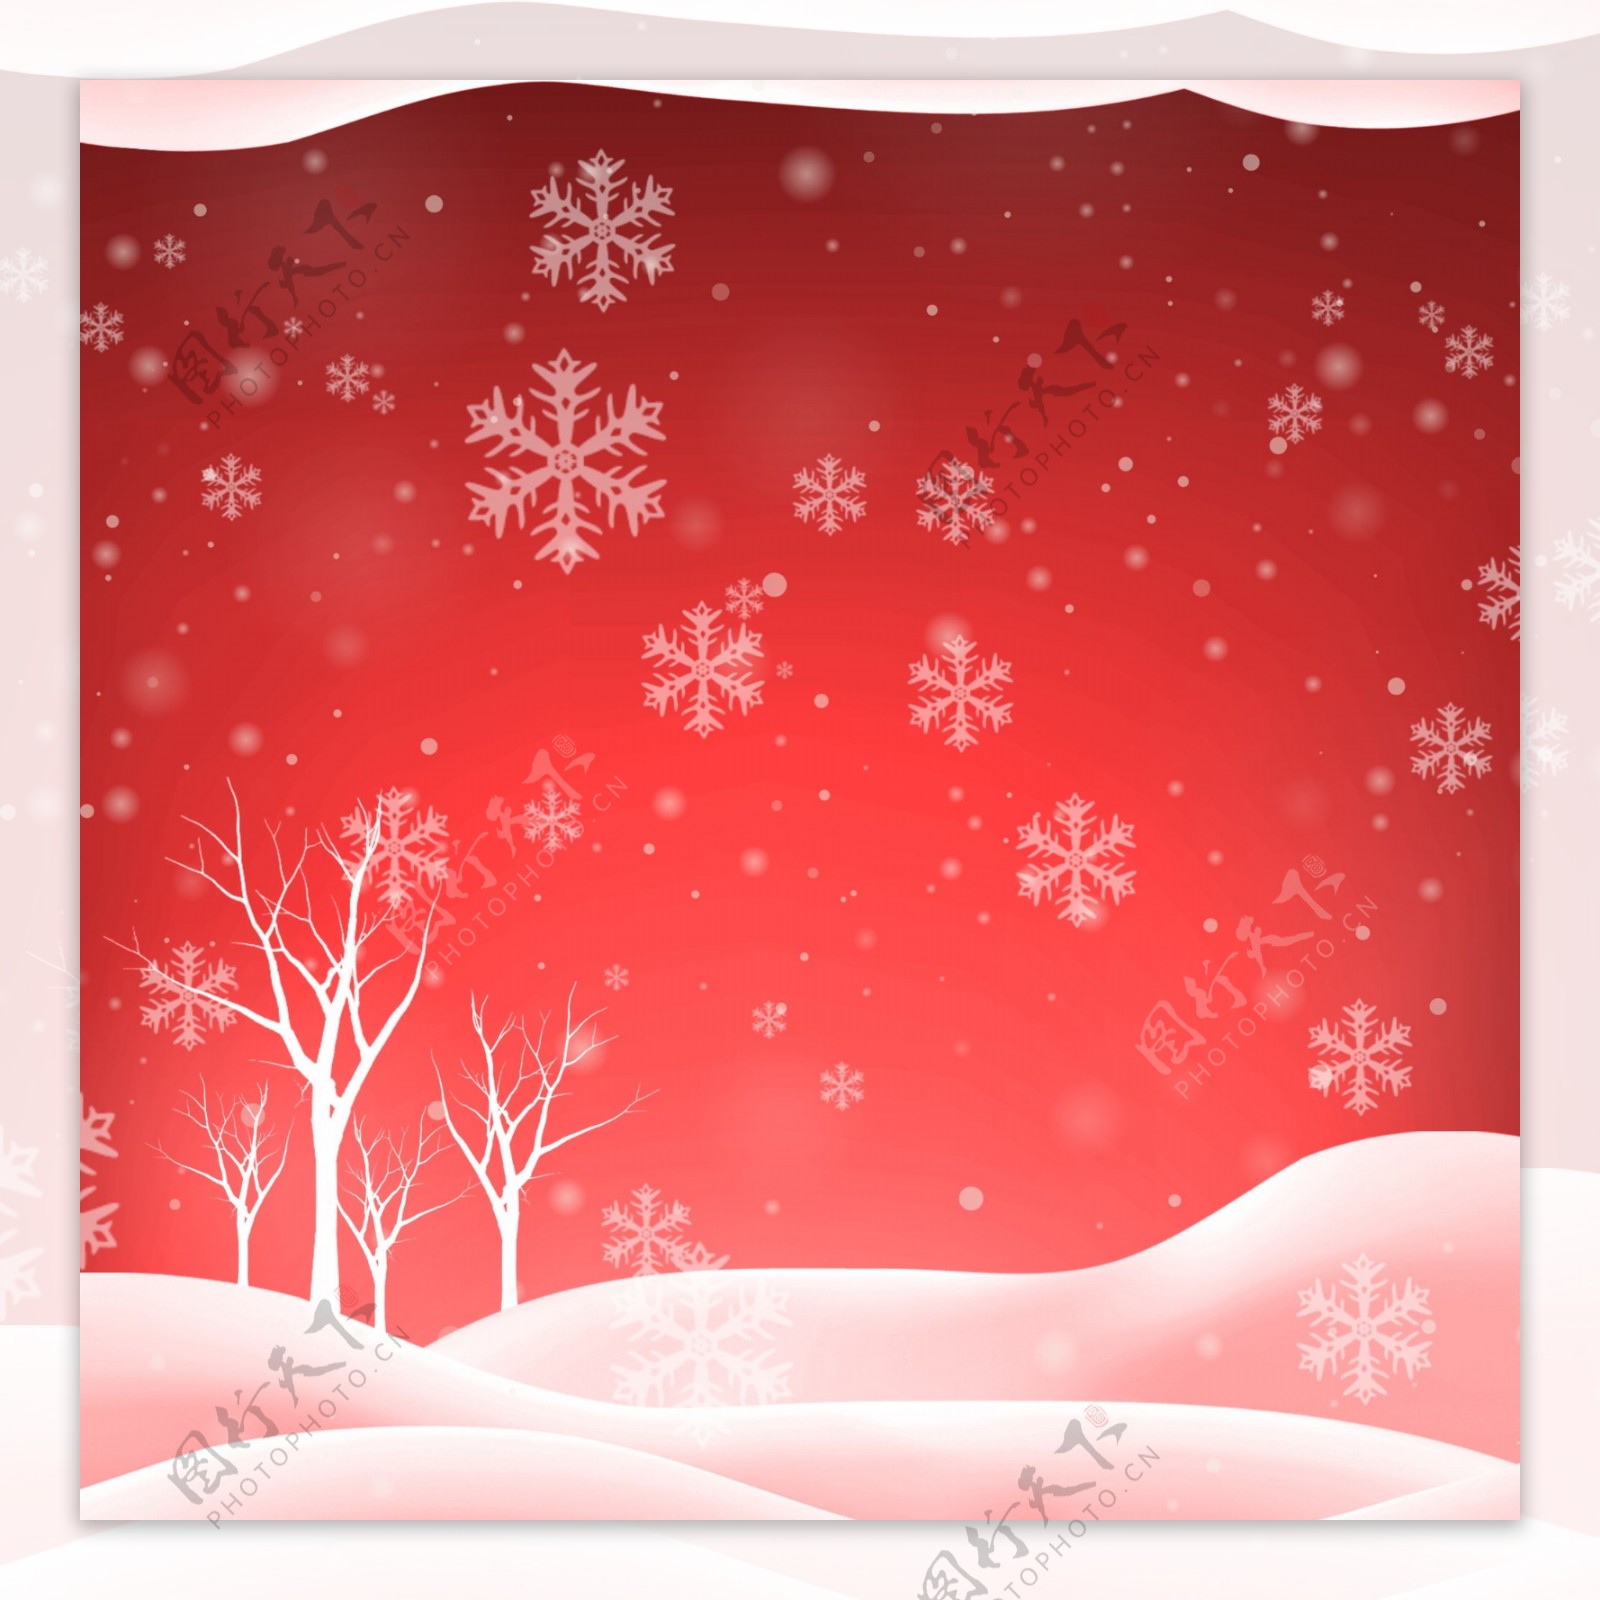 下雪雪景红色喜庆新年婚庆背景模板